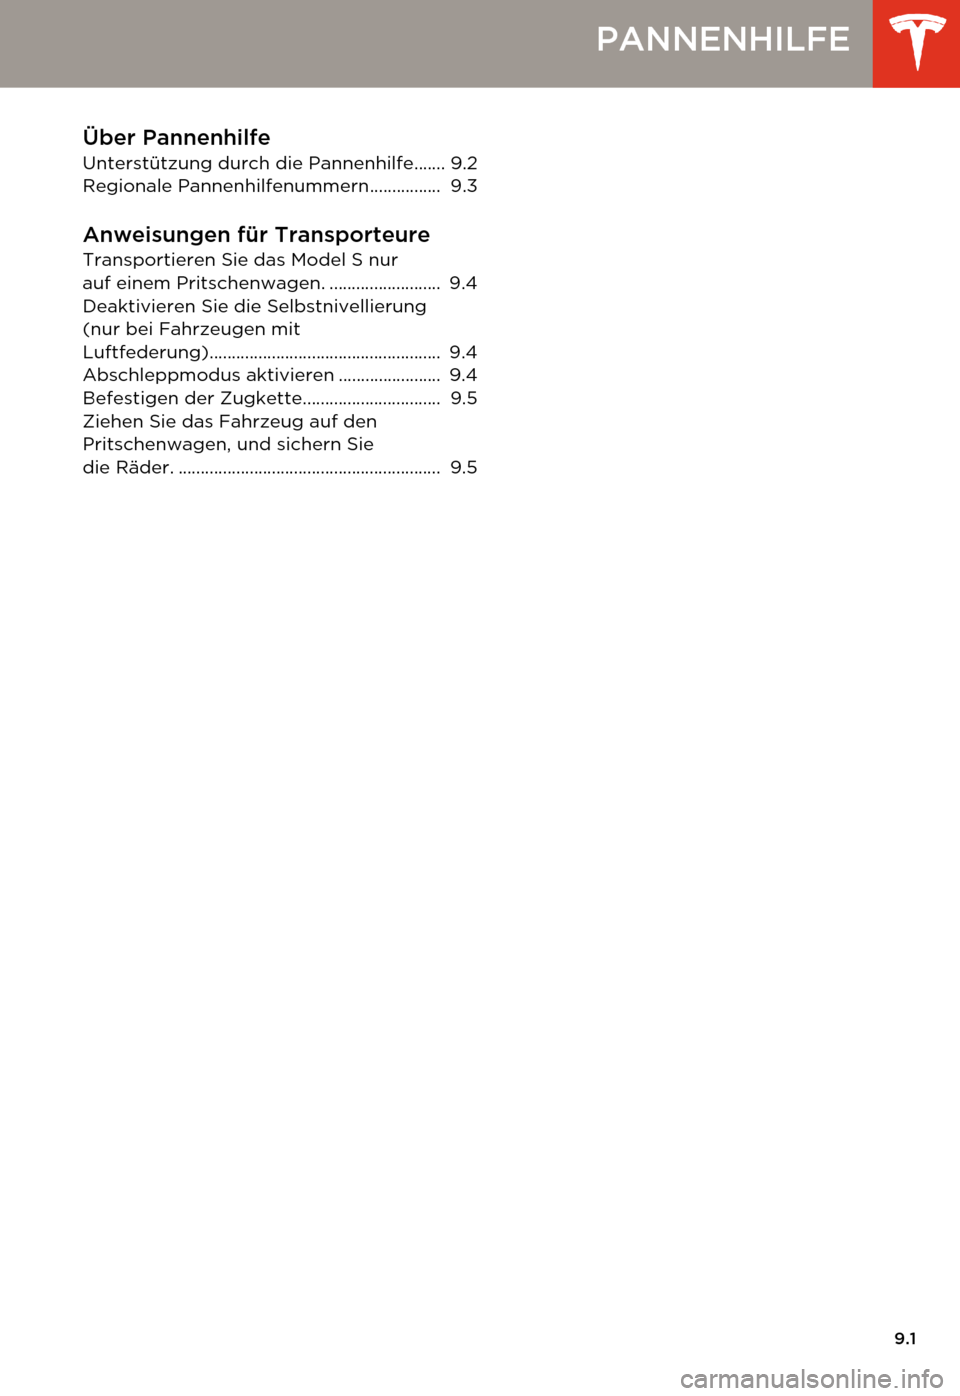 TESLA MODEL S 2014  Betriebsanleitung (in German) 9.1
PANNENHILFE
Über Pannenhilfe
Unterstützung durch die Pannenhilfe....... 9.2
Regionale Pannenhilfenummern................  9.3
Anweisungen für TransporteureTransportieren Sie das Model S nur 
au